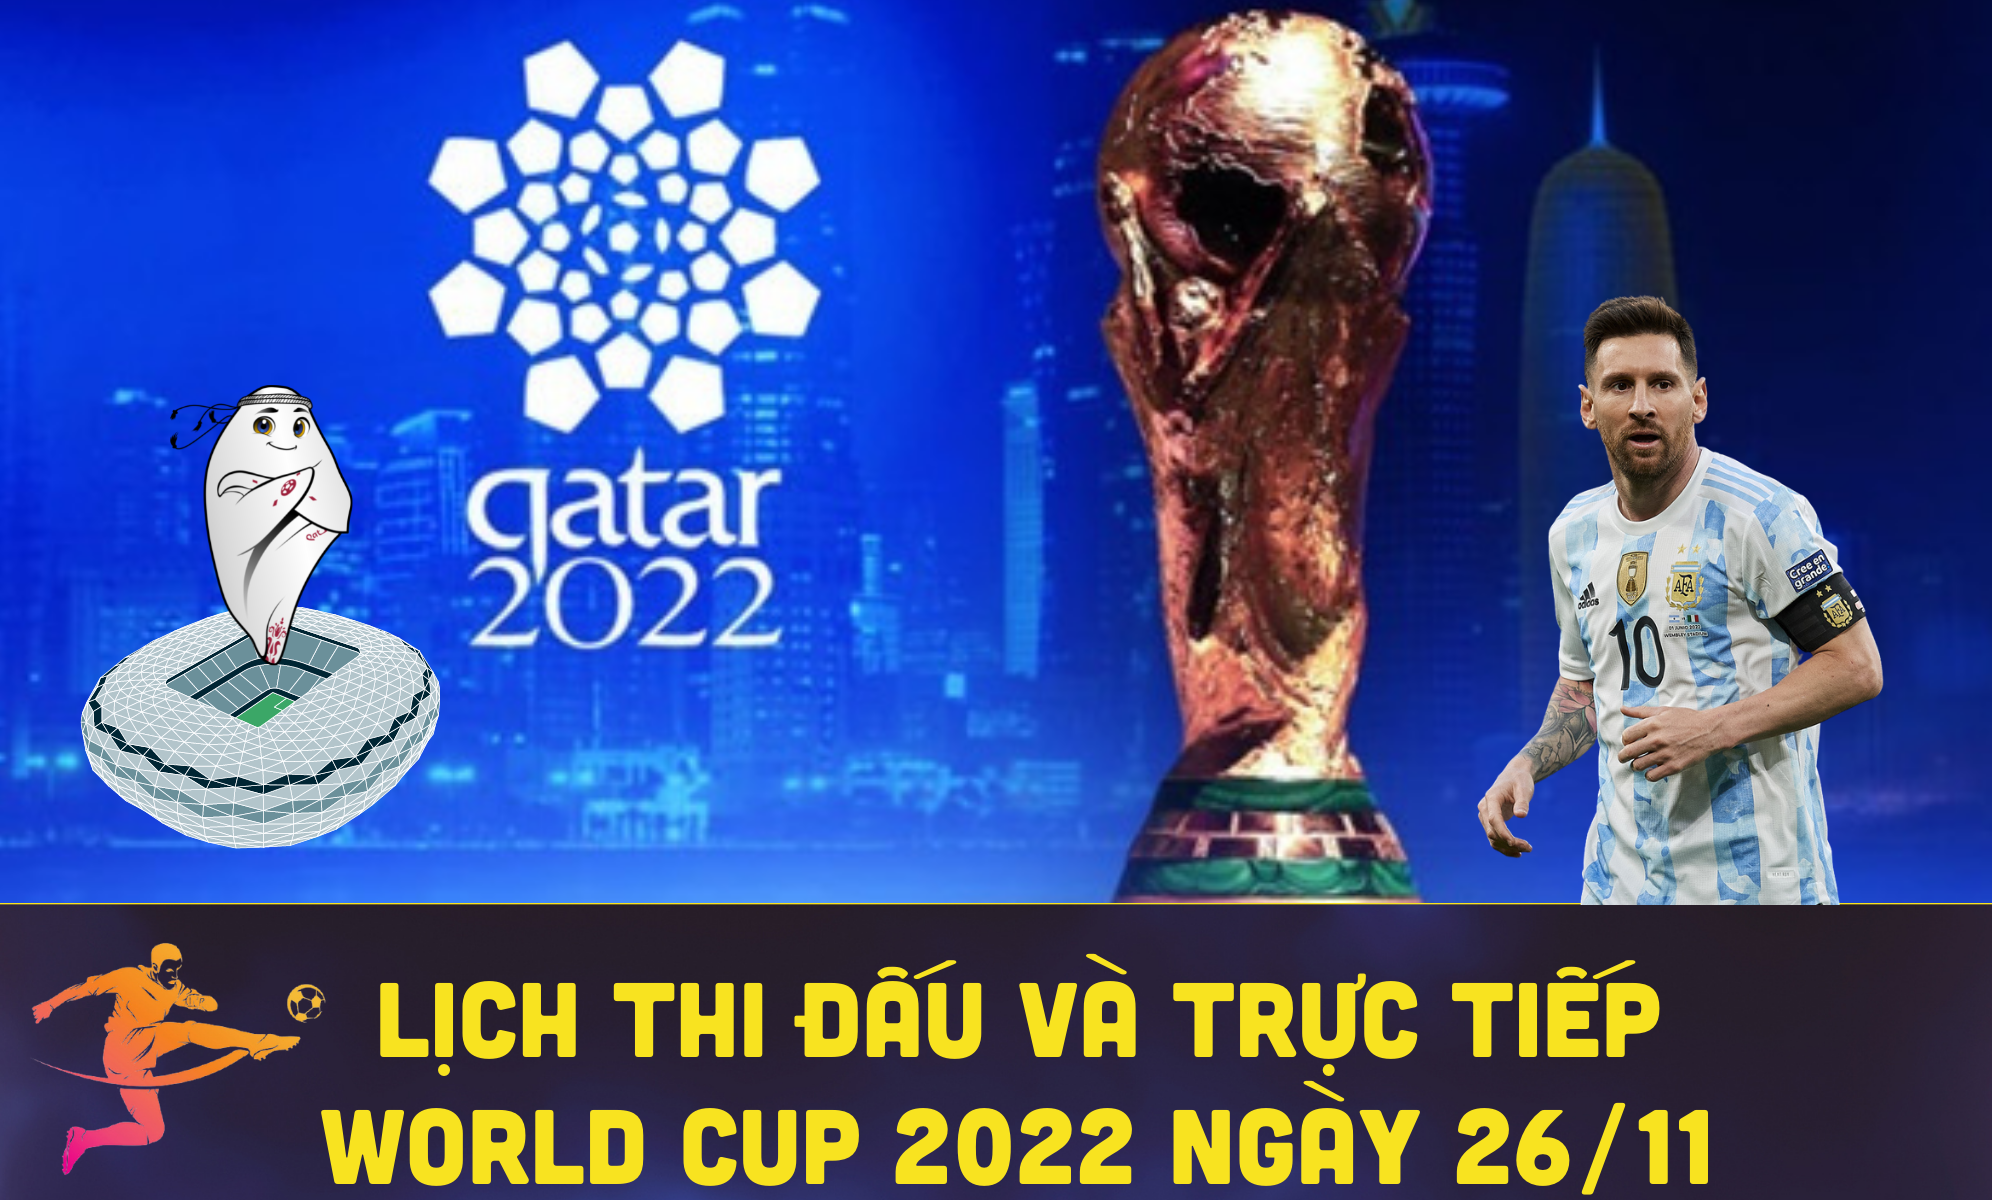 Lịch thi đấu và trực tiếp World Cup 2022 ngày 26/11